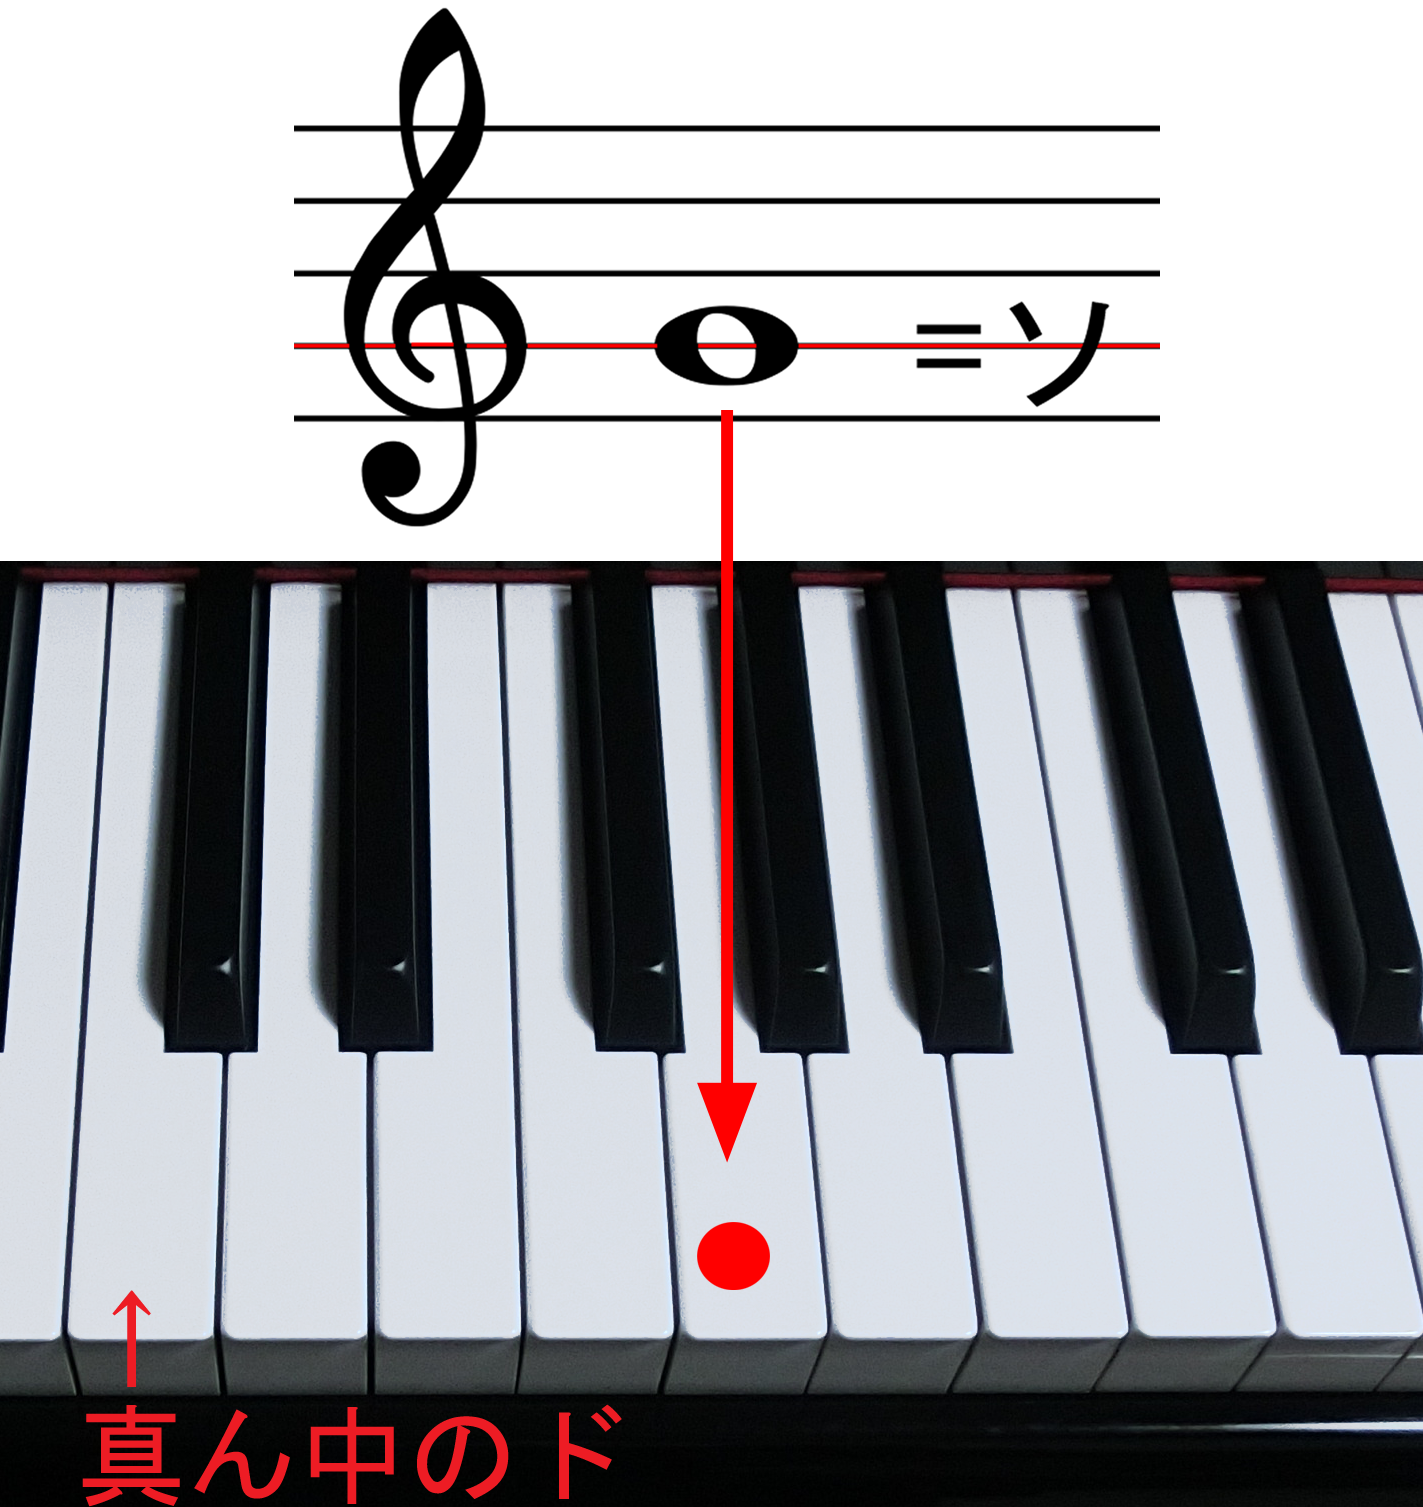 ト音記号のソと鍵盤の位置